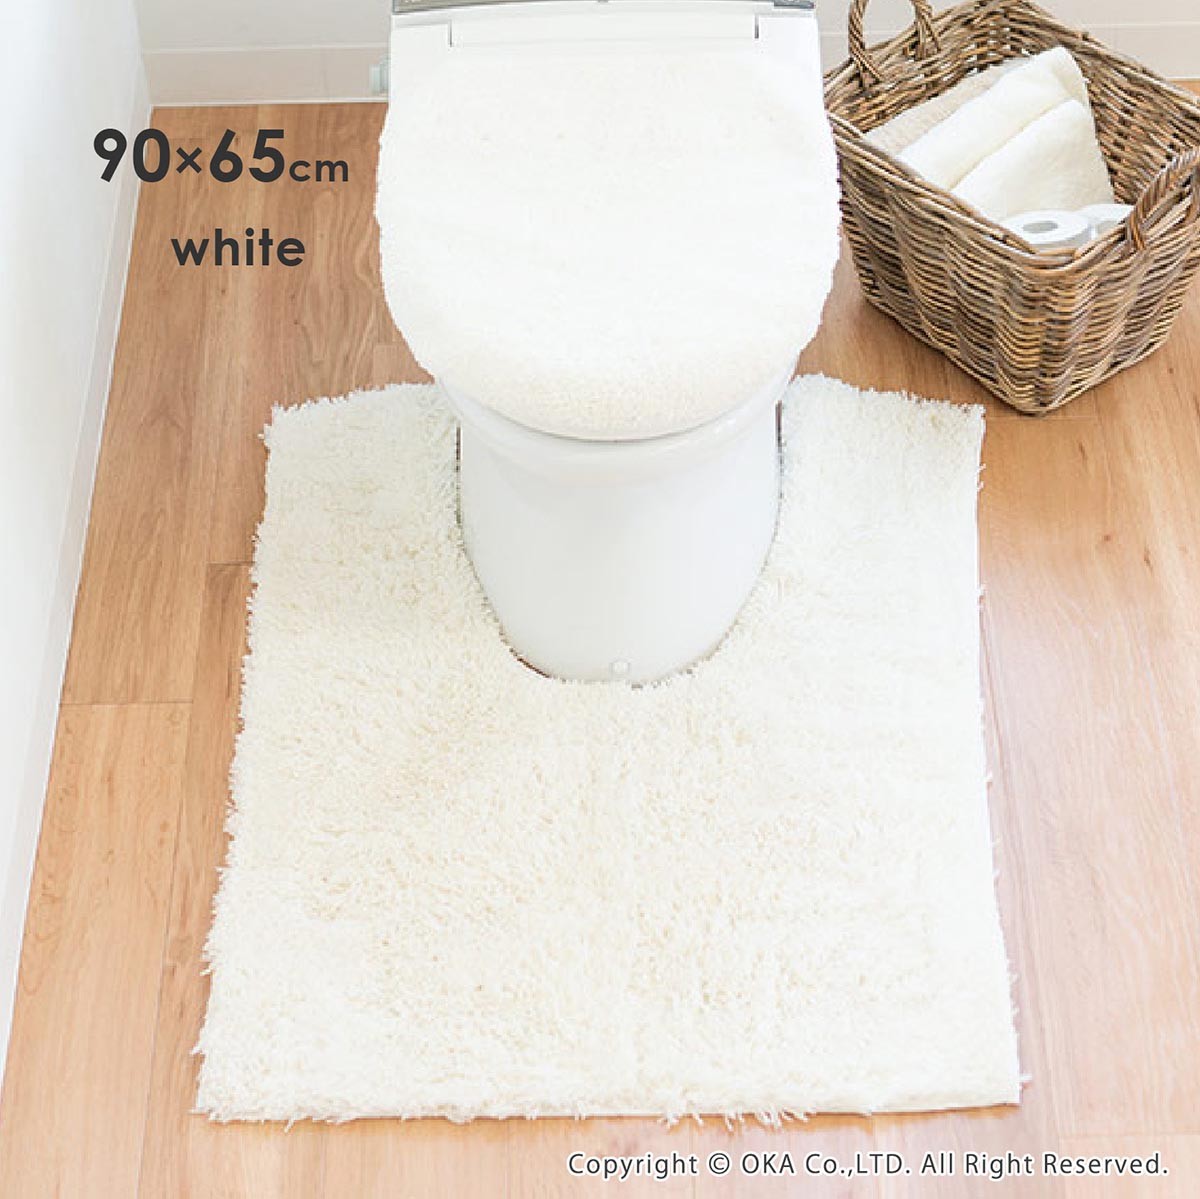  туалет коврик ... уголок длина большой размер примерно 90×65cm. раз хороший Dnachure туалет коврик туалет коврик модный длинный размер . вода скорость . антибактериальный дезодорация oka